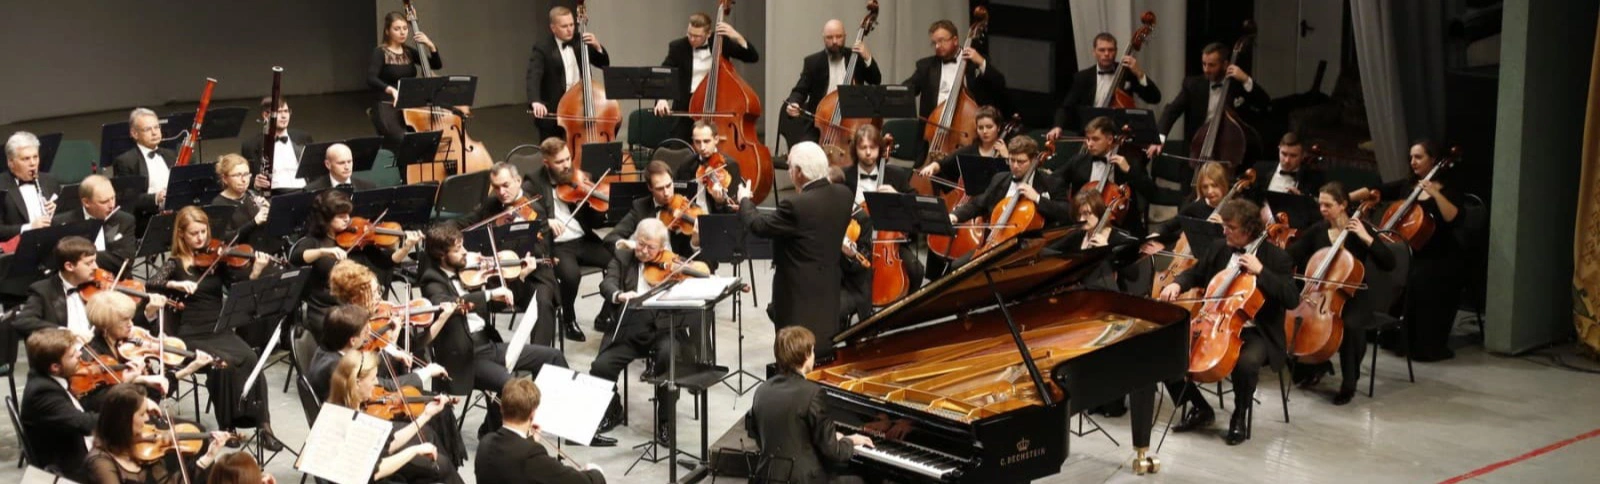 Академический симфонический оркестр закрывает сезон произведениями Шумана и Малера